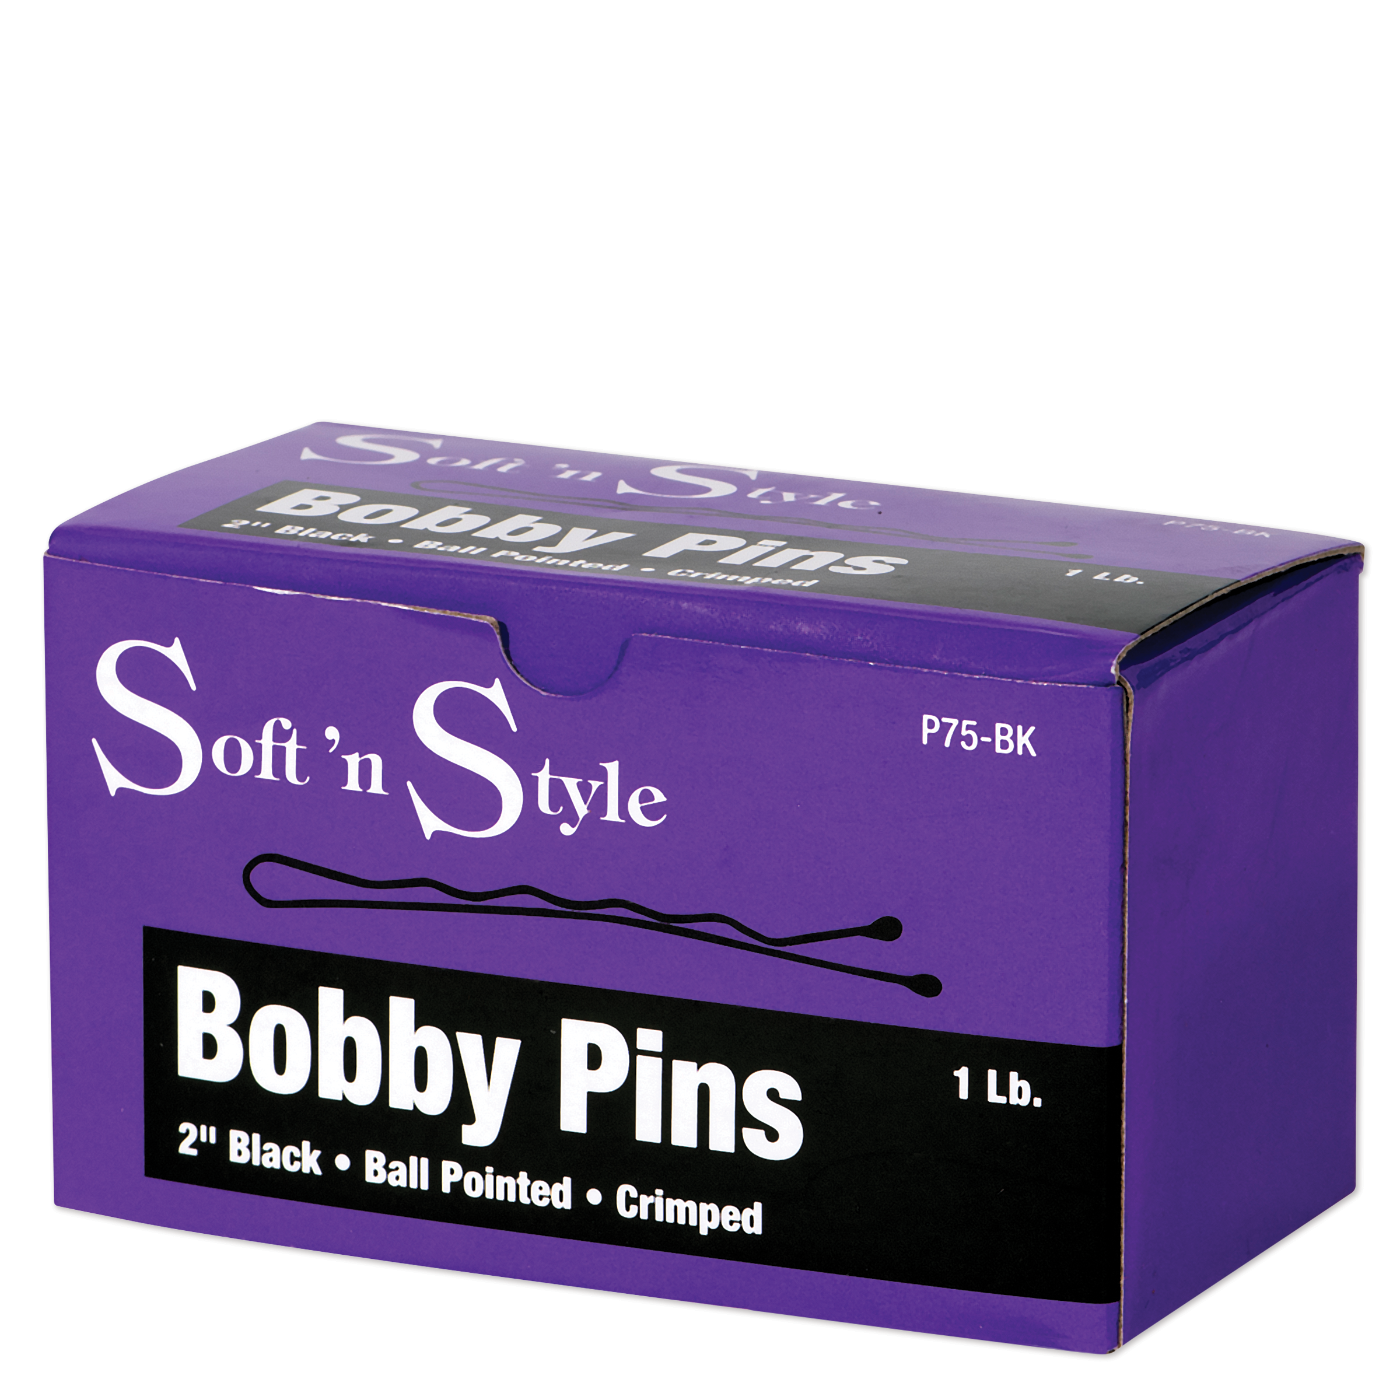 Bobby Pins, Black, 1 lb. box - 2"